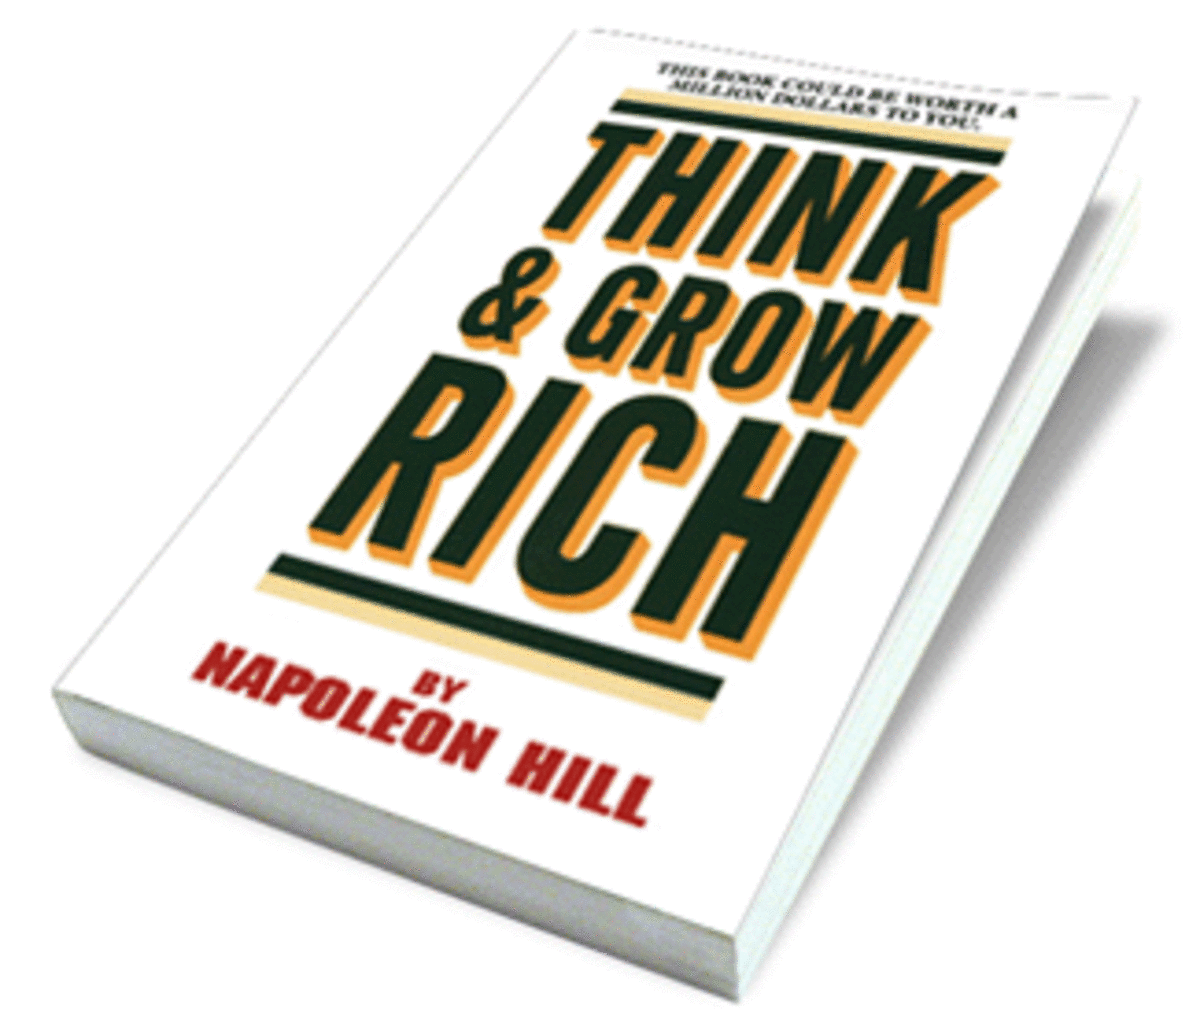 Napoleon Hill’s 13 secrets of getting rich.